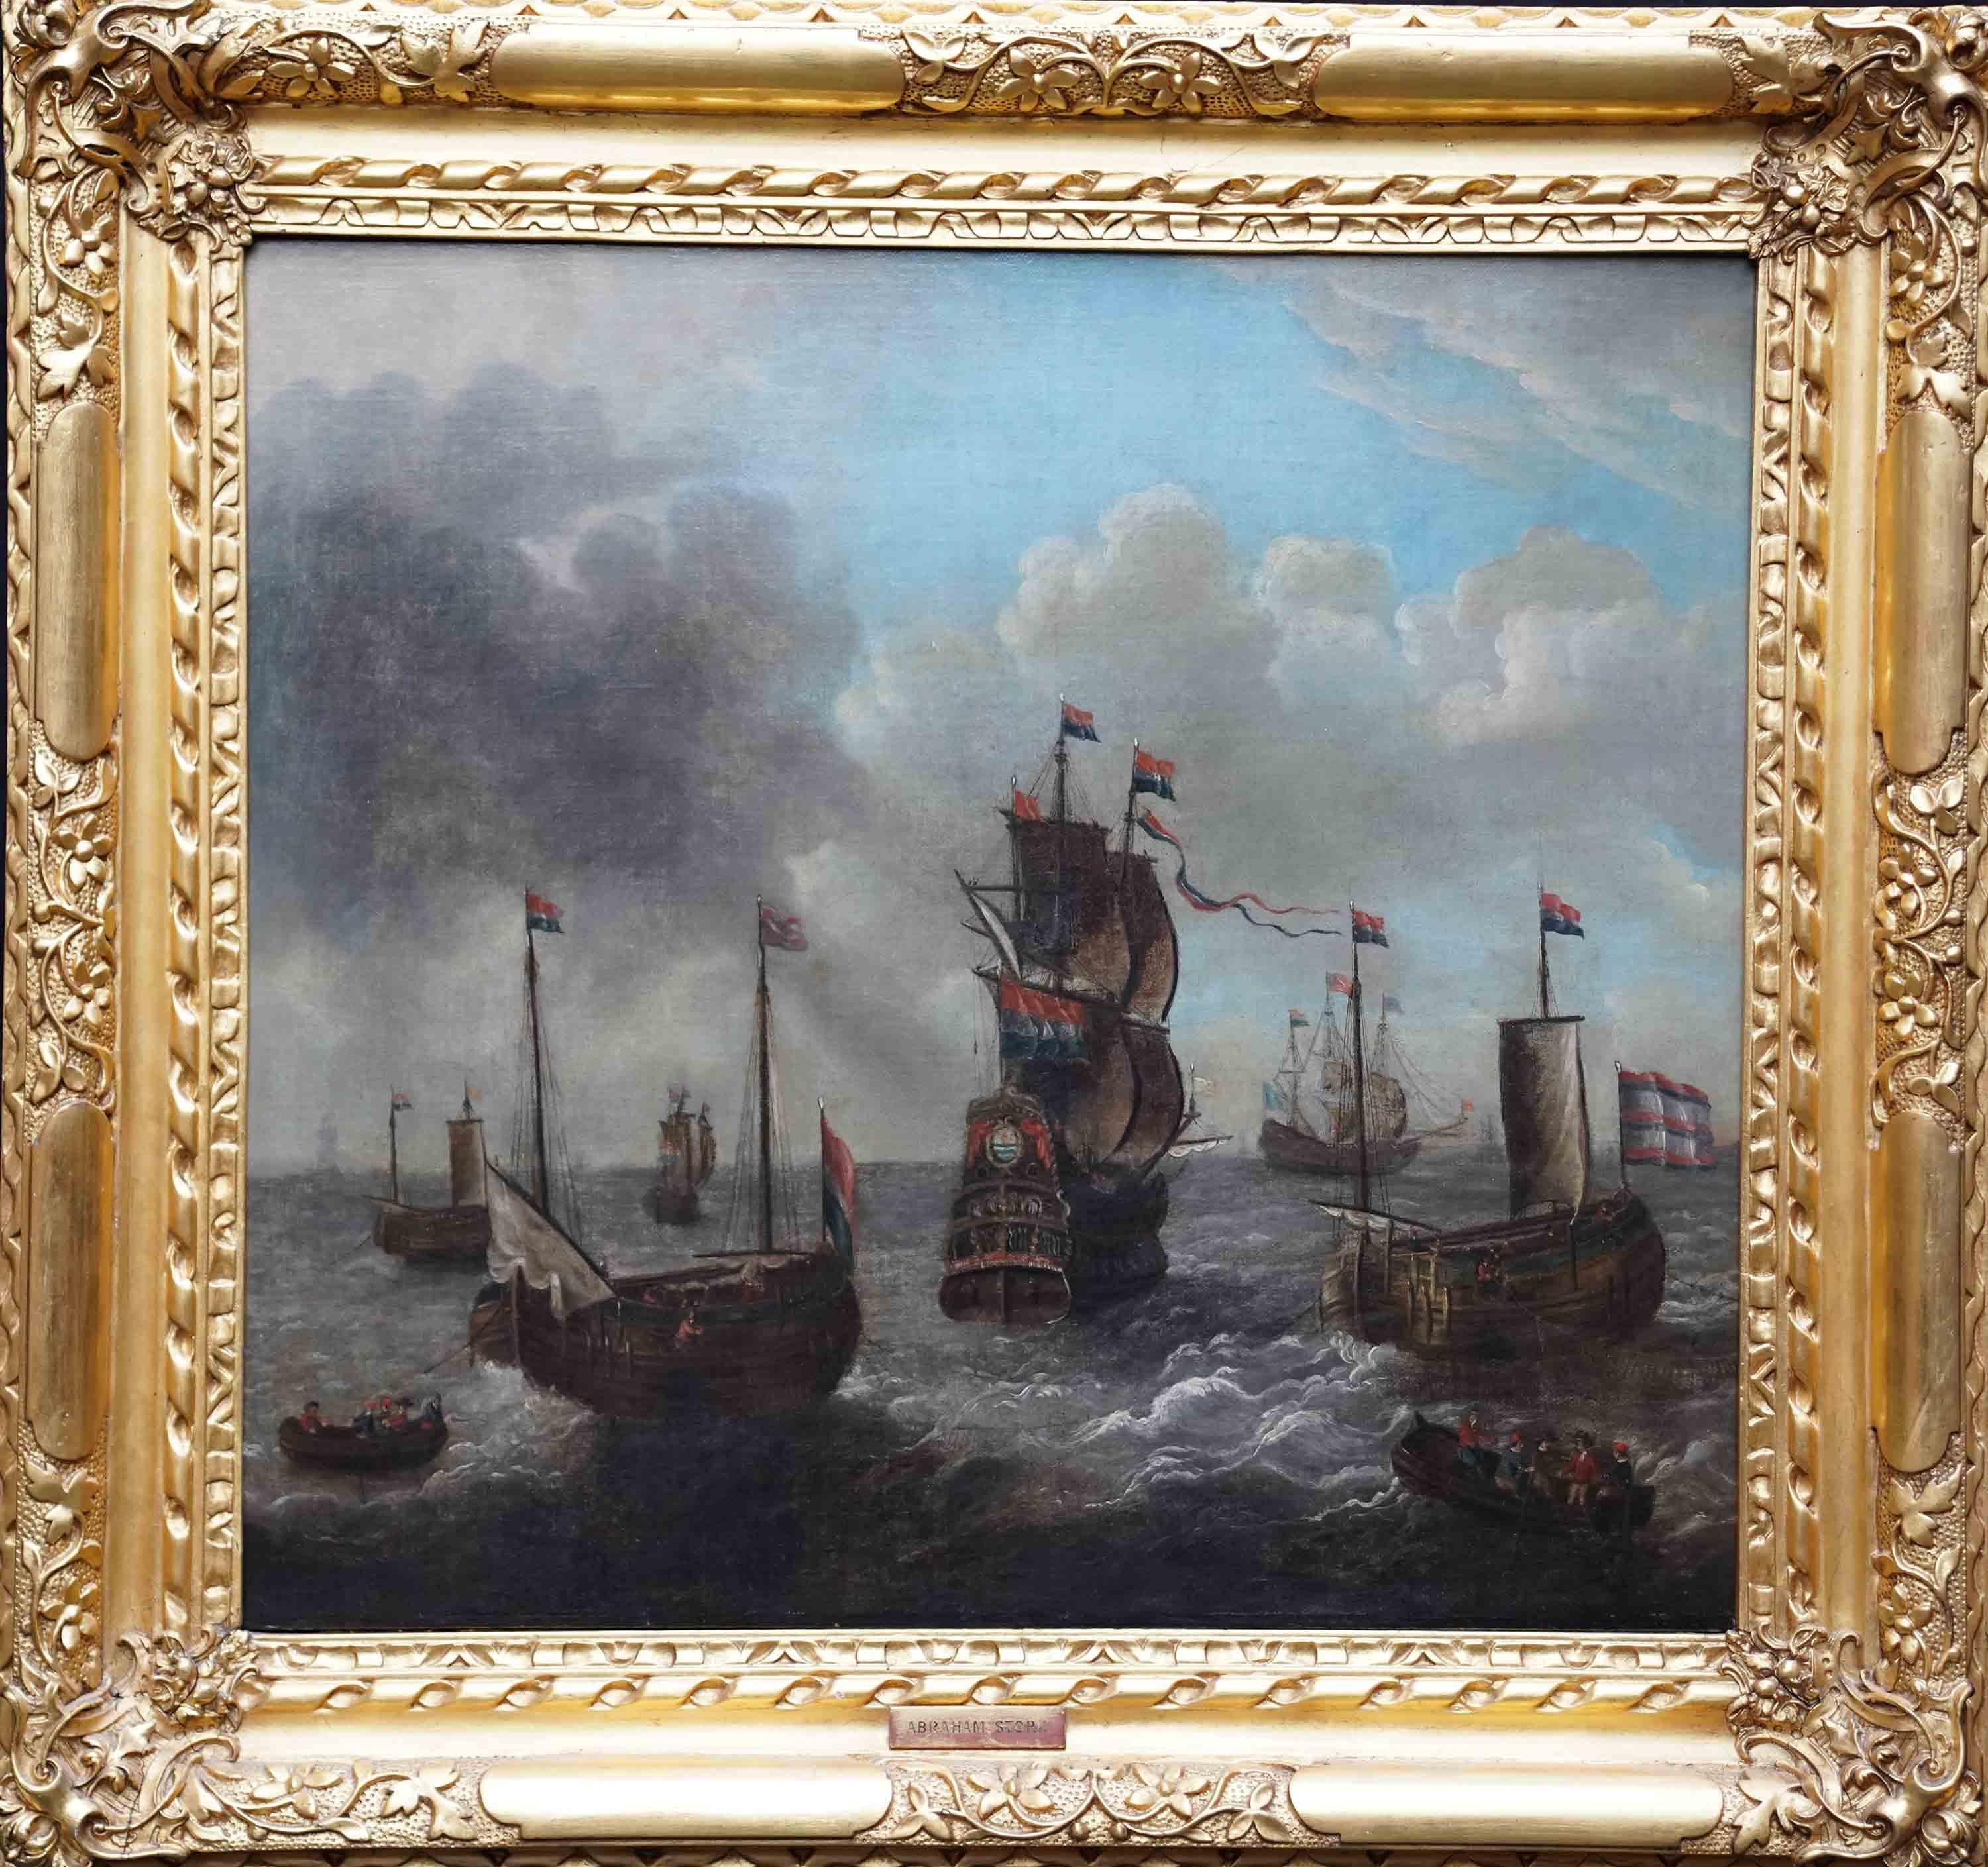 Abraham Storck Landscape Painting – Schiffe auf dem Meer - Niederländisches Ölgemälde eines Alten Meisters der Meereskunst des 17. Jahrhunderts